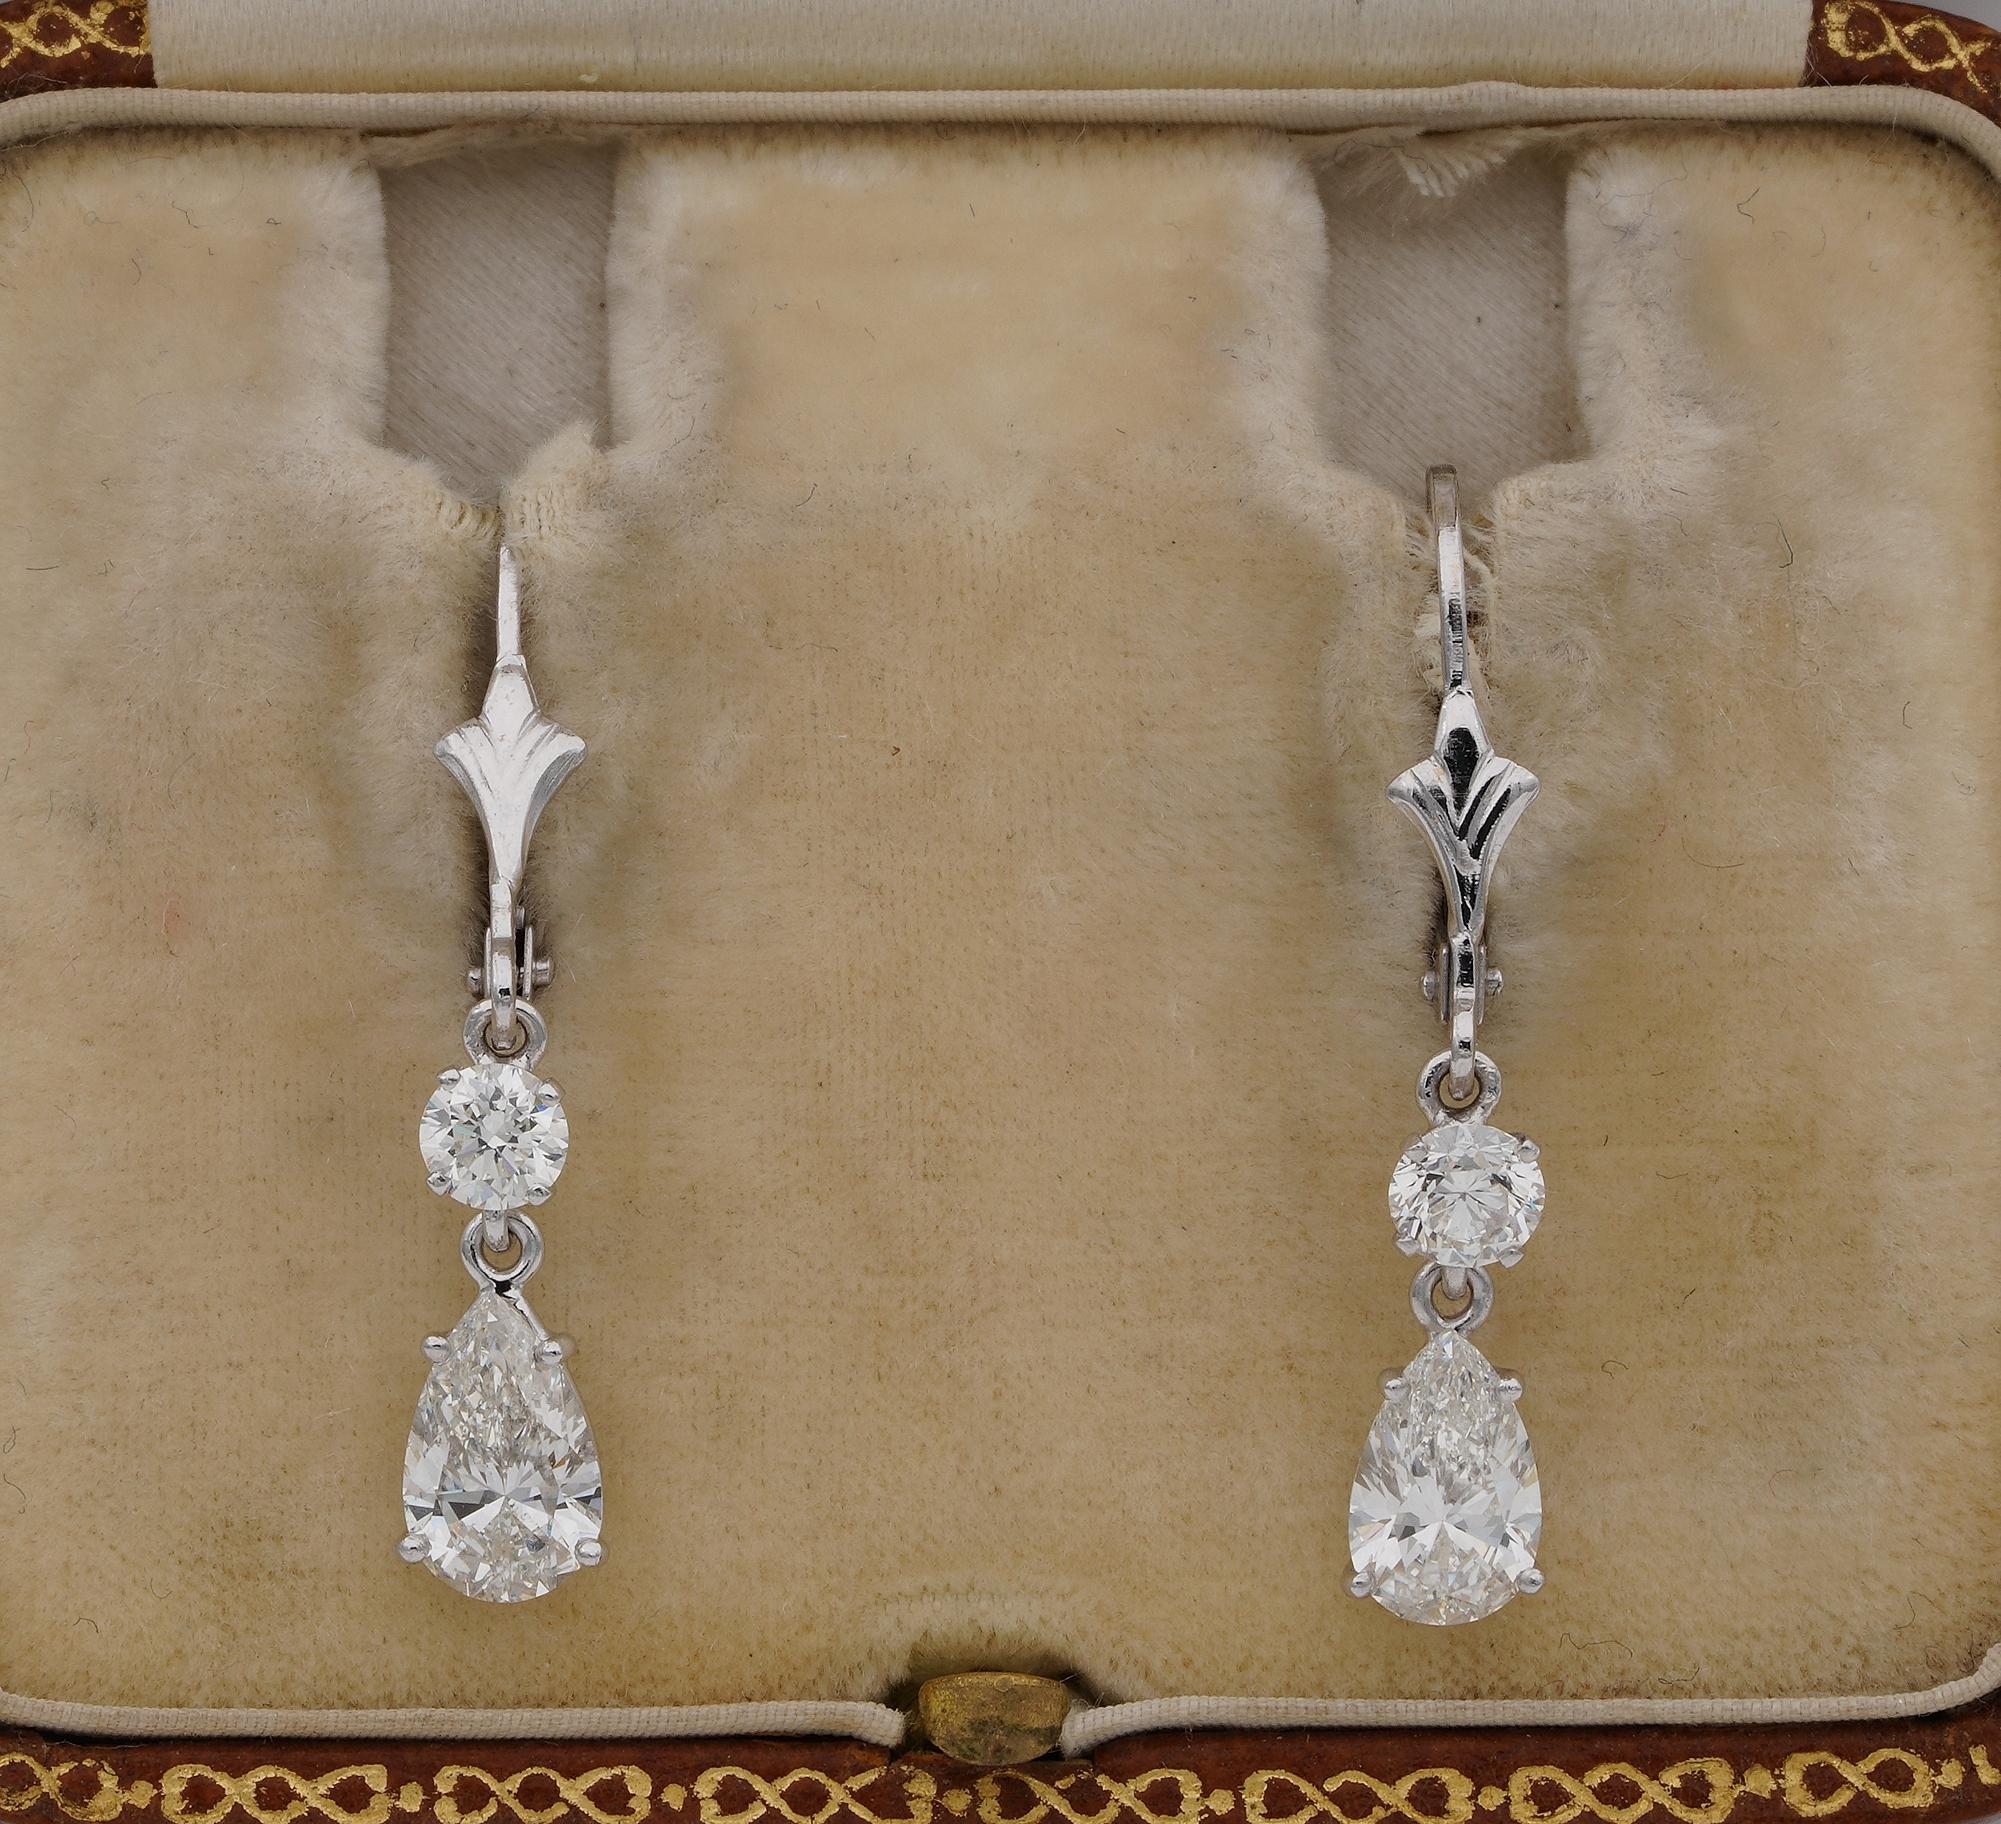 Une étincelle qui brille !
Ravissantes boucles d'oreilles pendantes en diamant datant d'avant 1980 - faites à la main en or blanc massif 18 carats avec une quantité minimale de métal doré donnant une légèreté particulière à l'immense éclat du